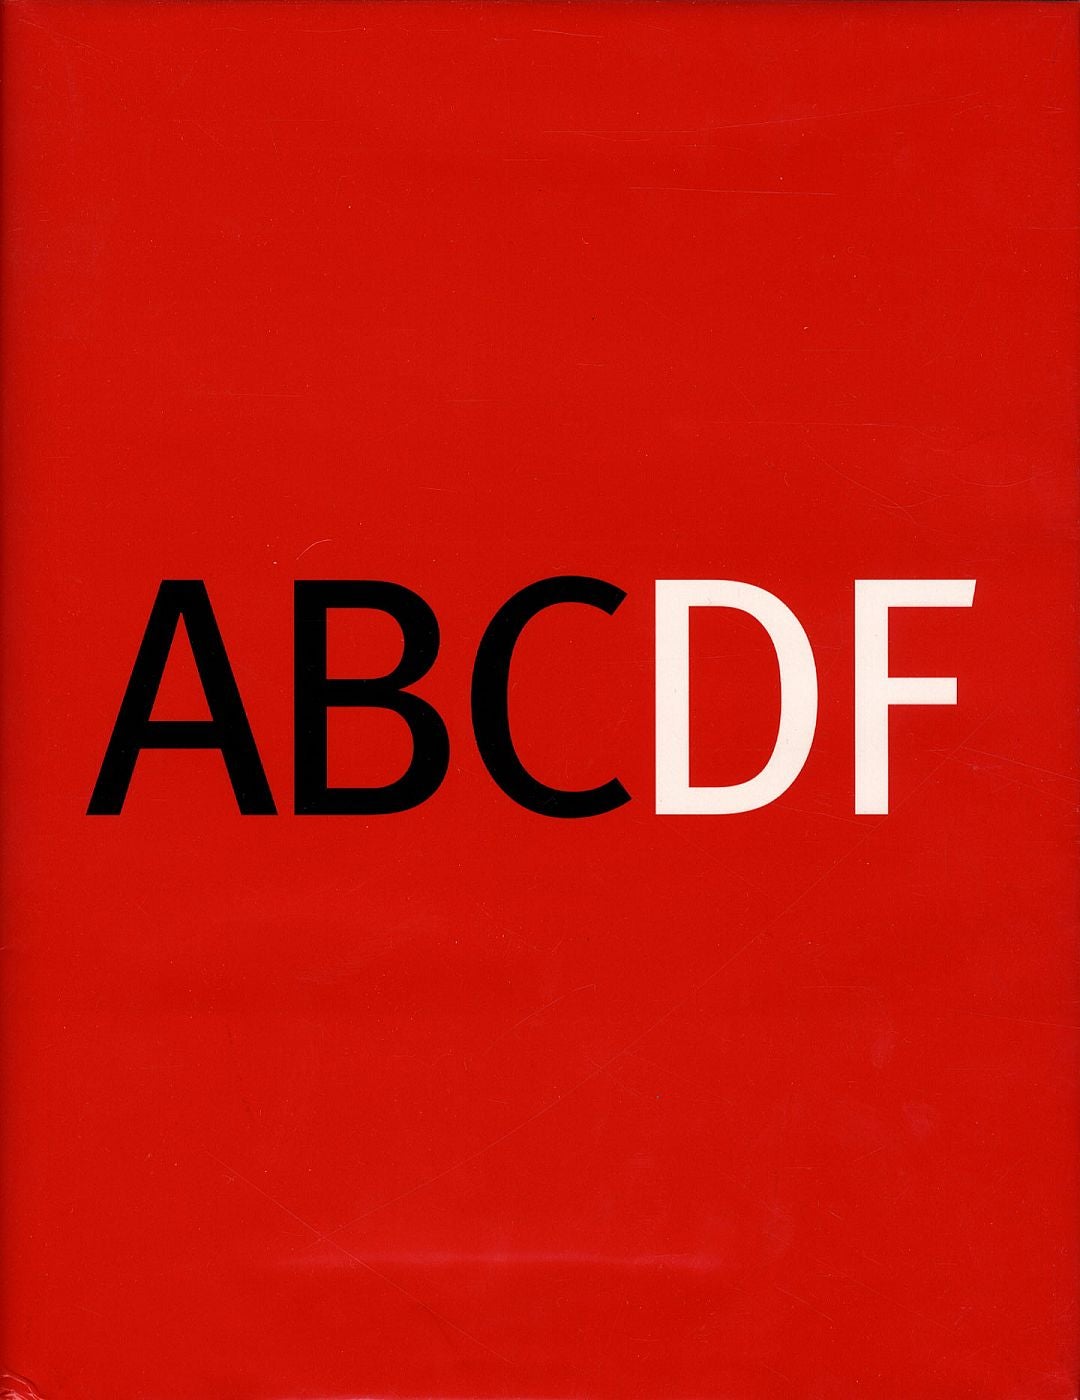 ABCDF: Diccionario gráfico de la ciudad de México ABCDF: Graphic Dictionary  of Mexico City by Cristina Faesler BREMER on Vincent Borrelli, Bookseller